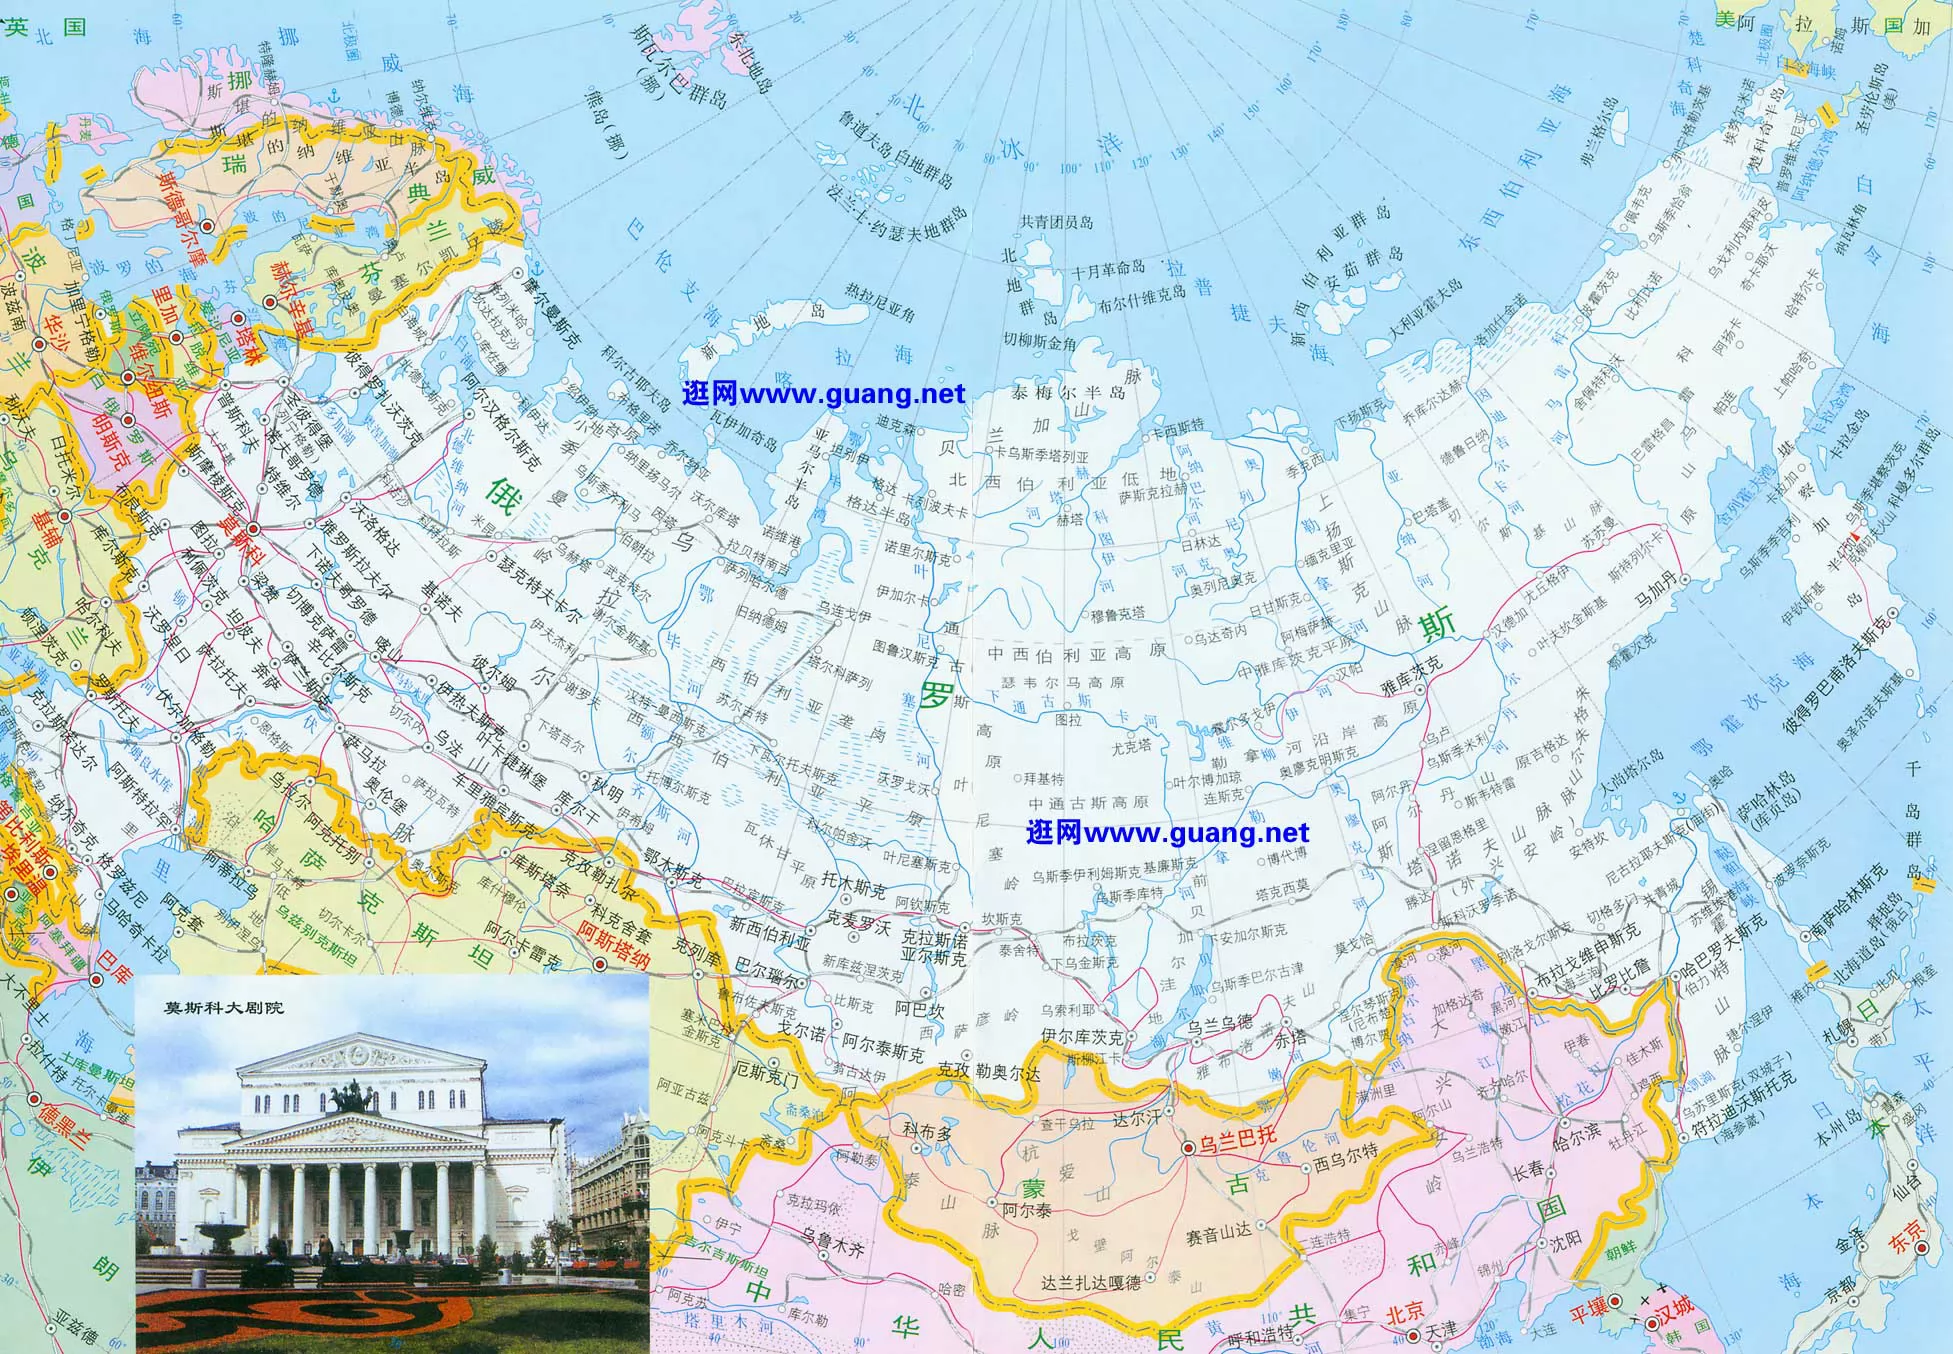 俄罗斯地图高清大图_俄罗斯地图中文版高清版大图 - 随意贴